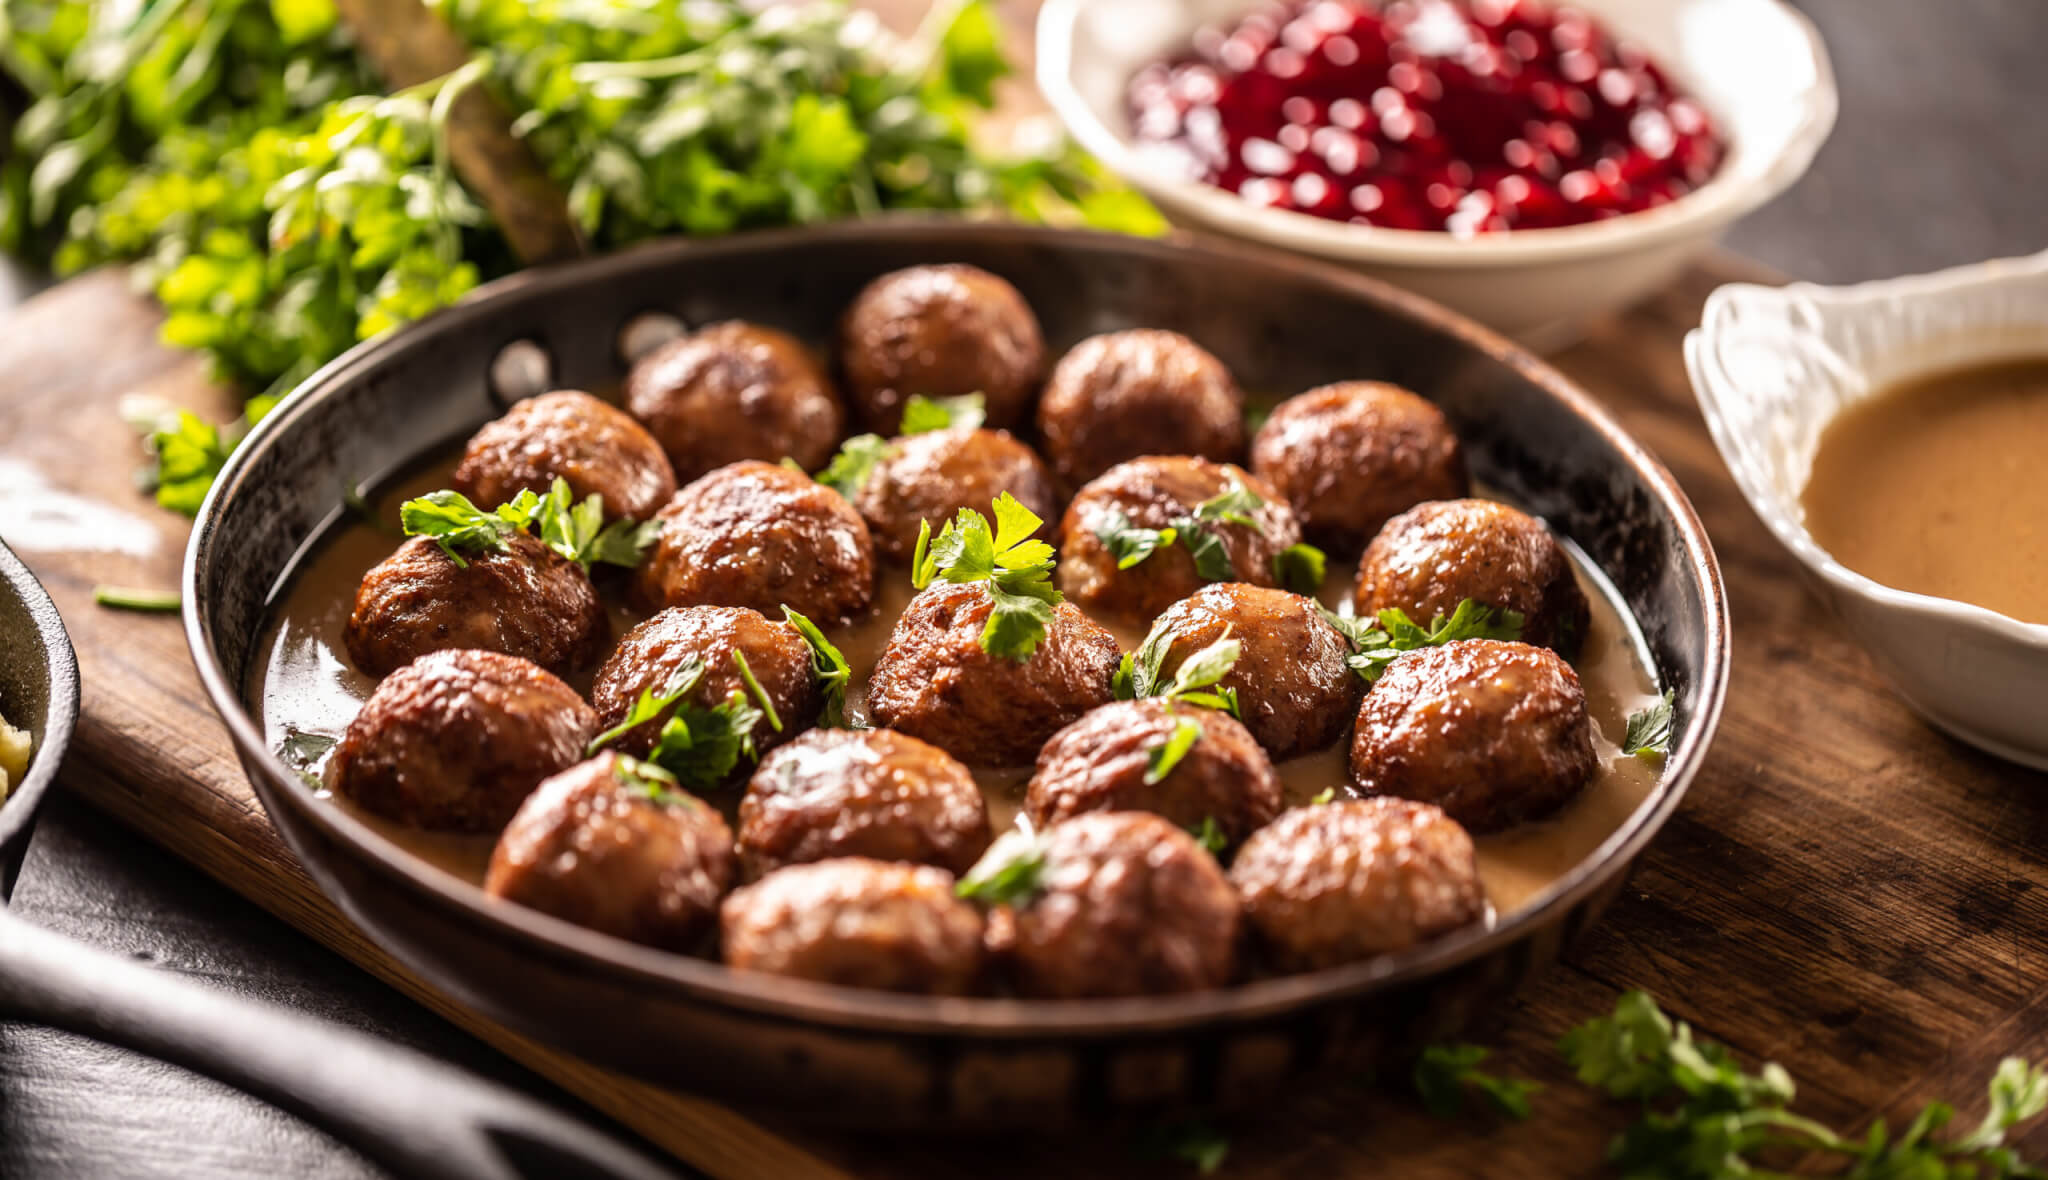 Dinner in Minutes: 7 BEST Frozen Meatballs That Taste Like Grandma Made 'Em